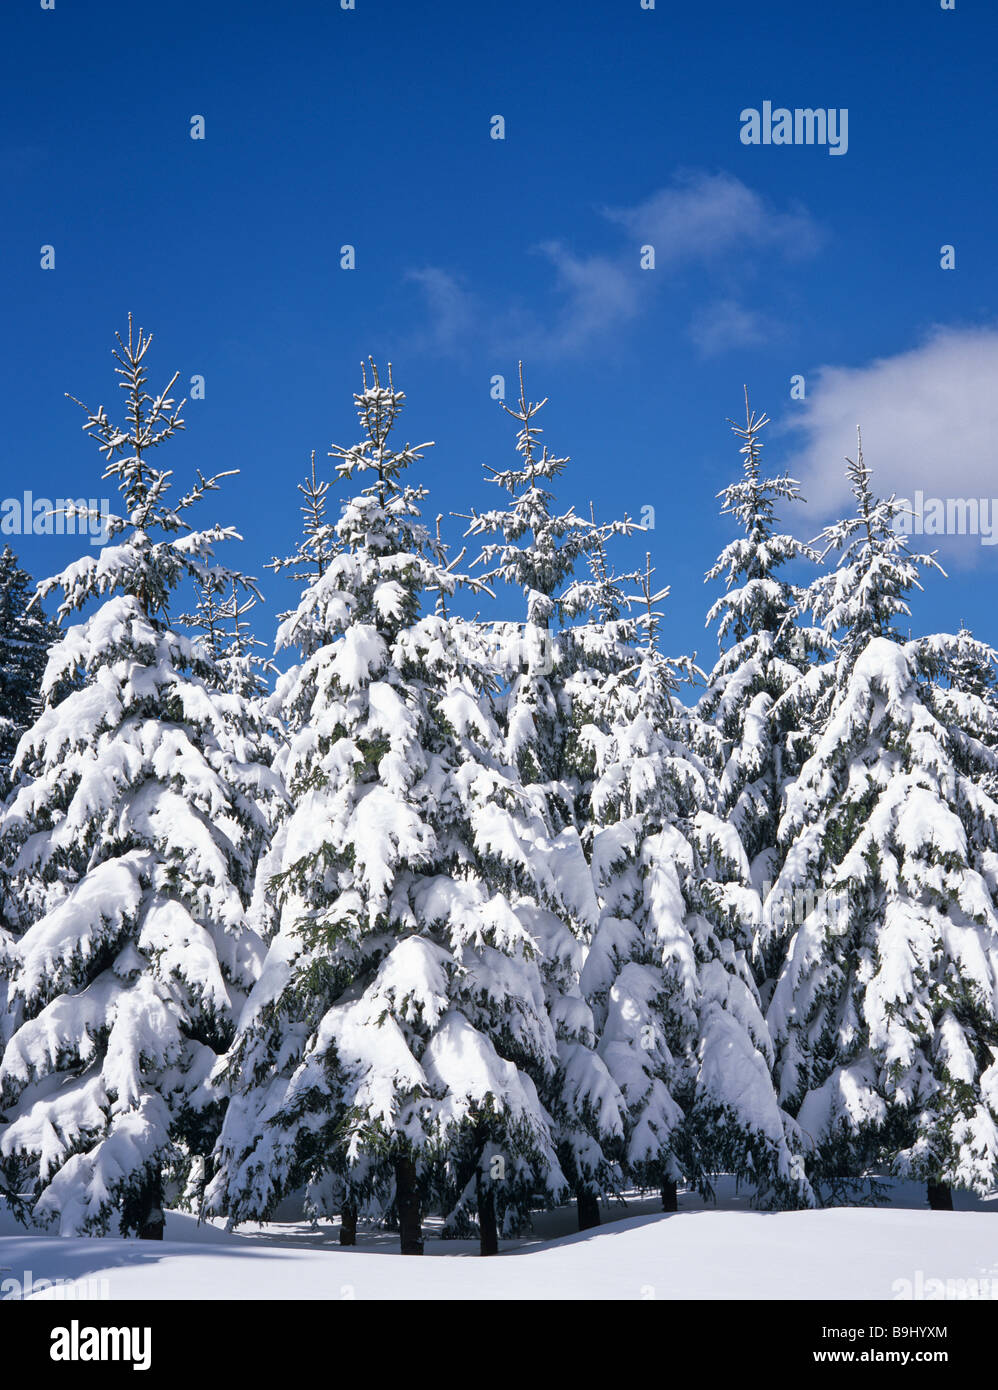 Arbres, forêt de sapins couverts de neige, hiver, paysage, neige fraîche Banque D'Images